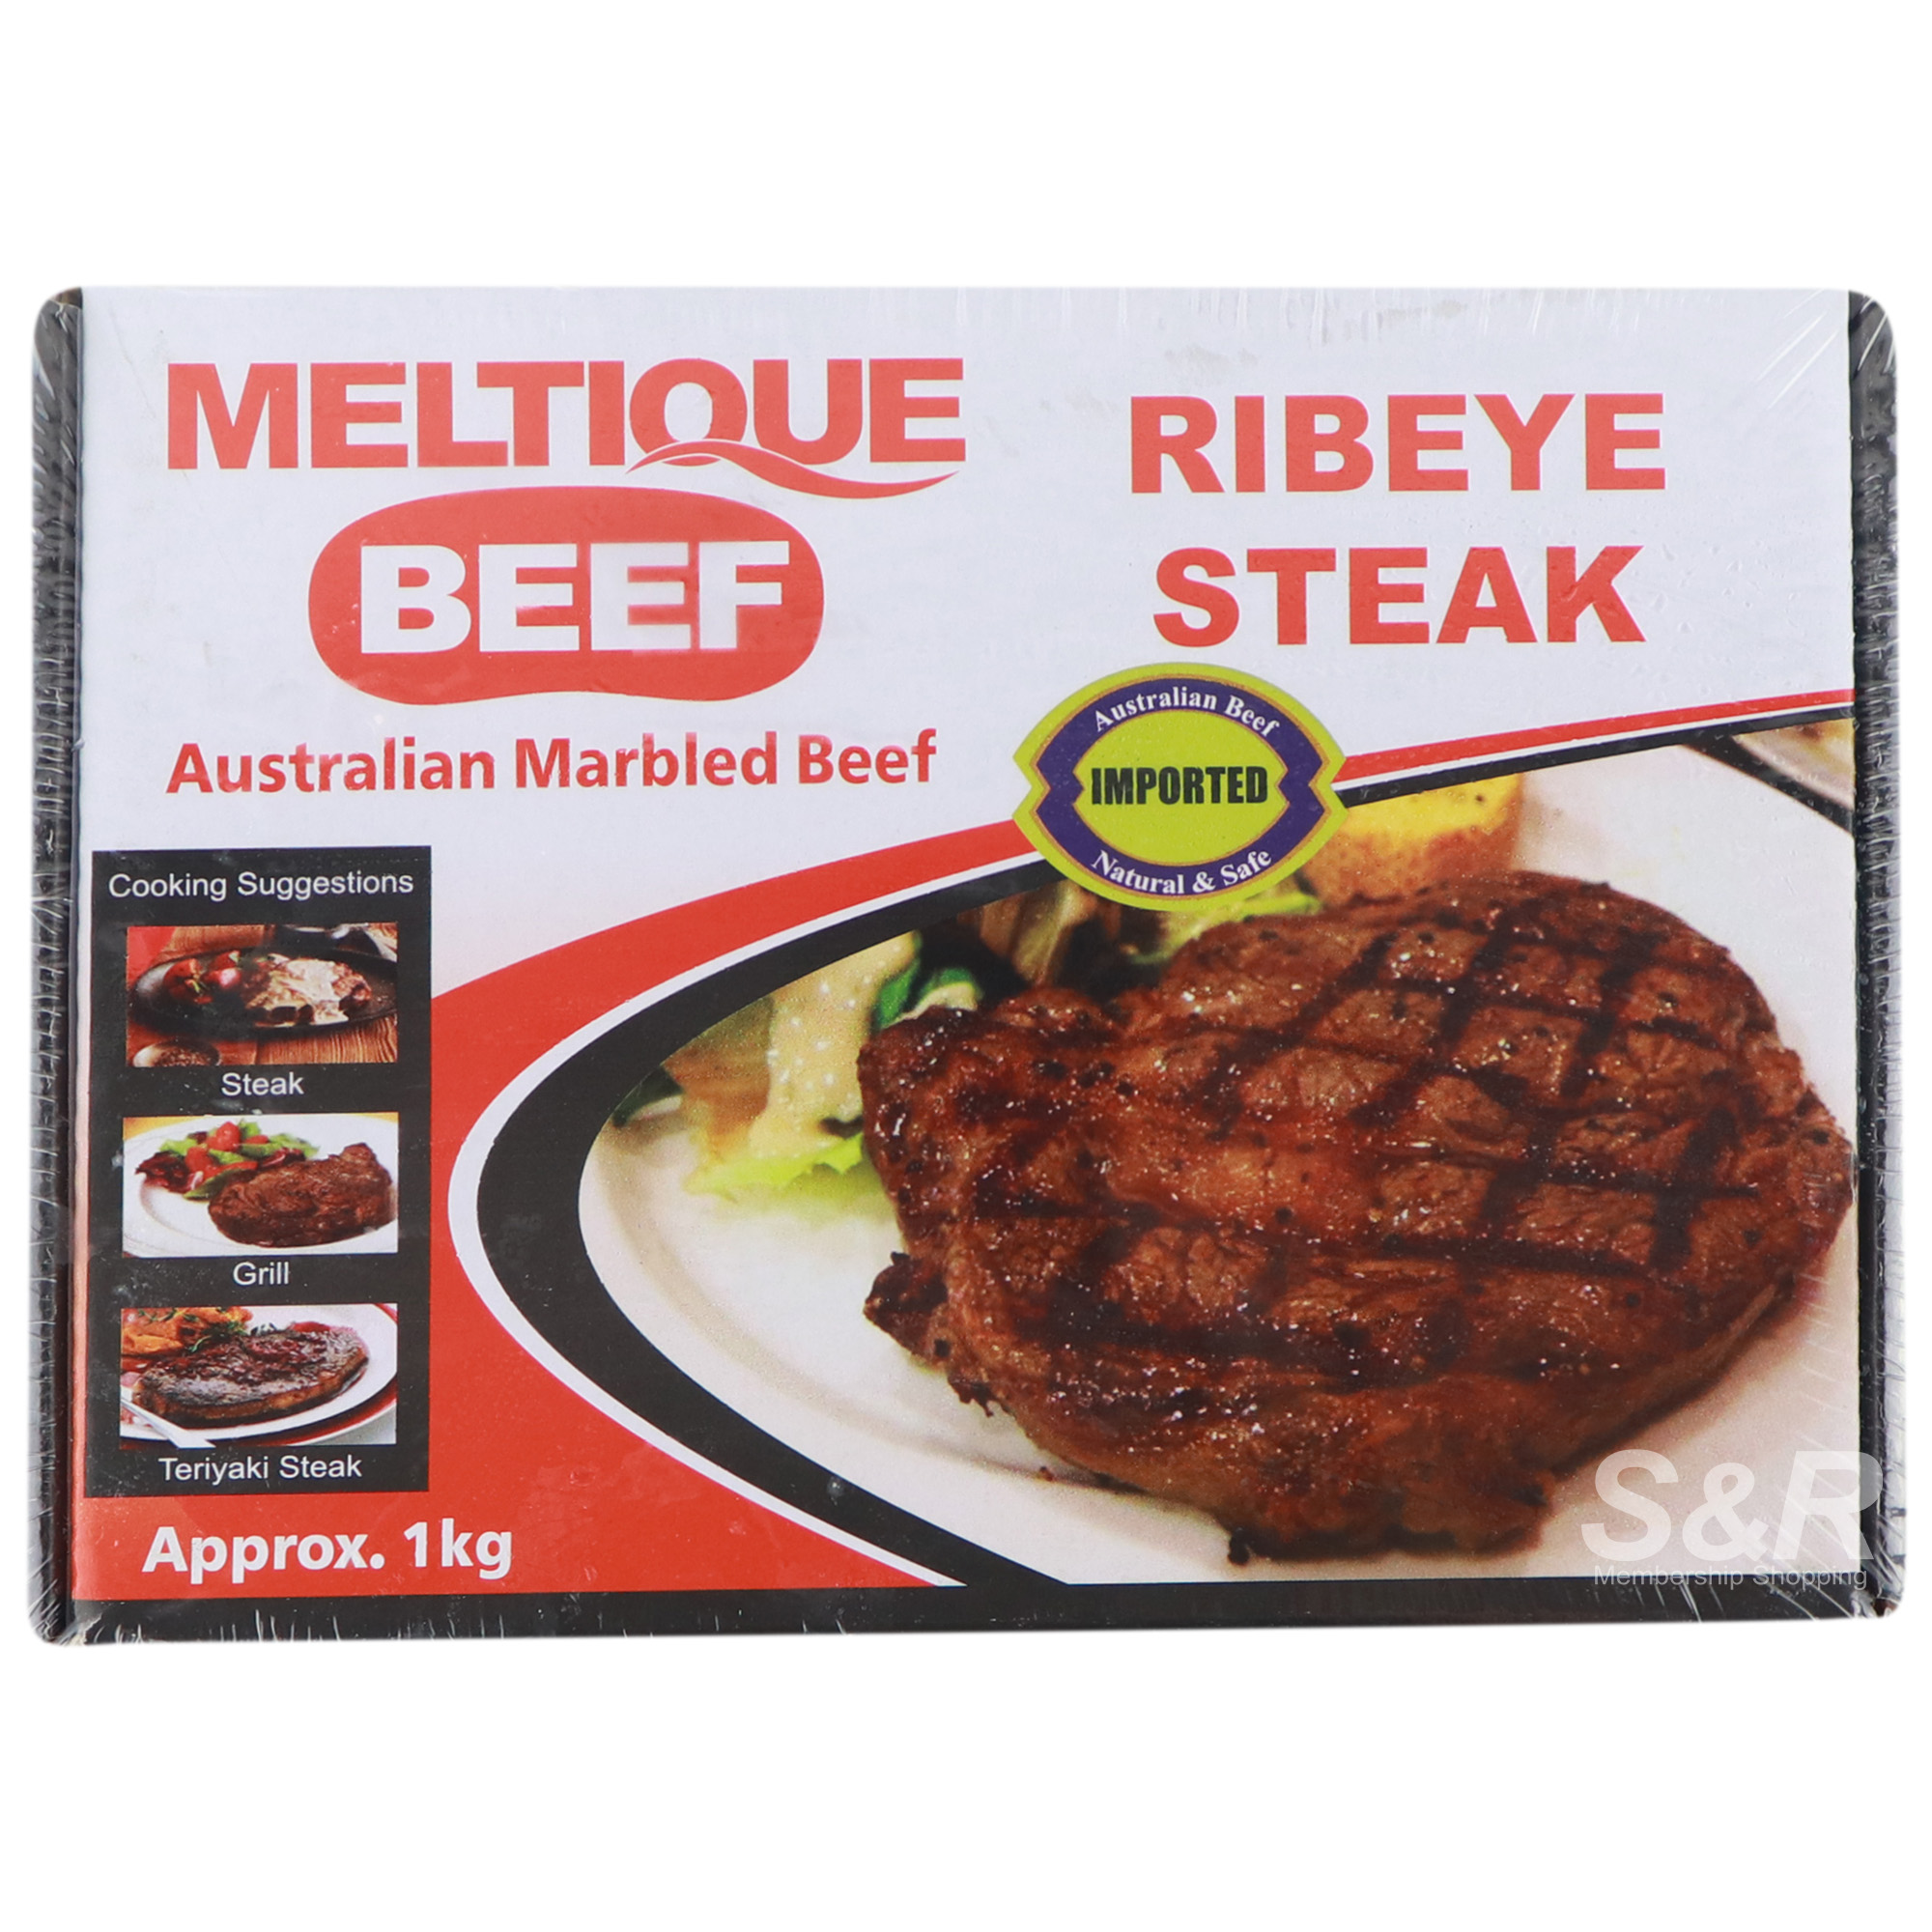 Meltique Beef Ribeye Steak 1kg